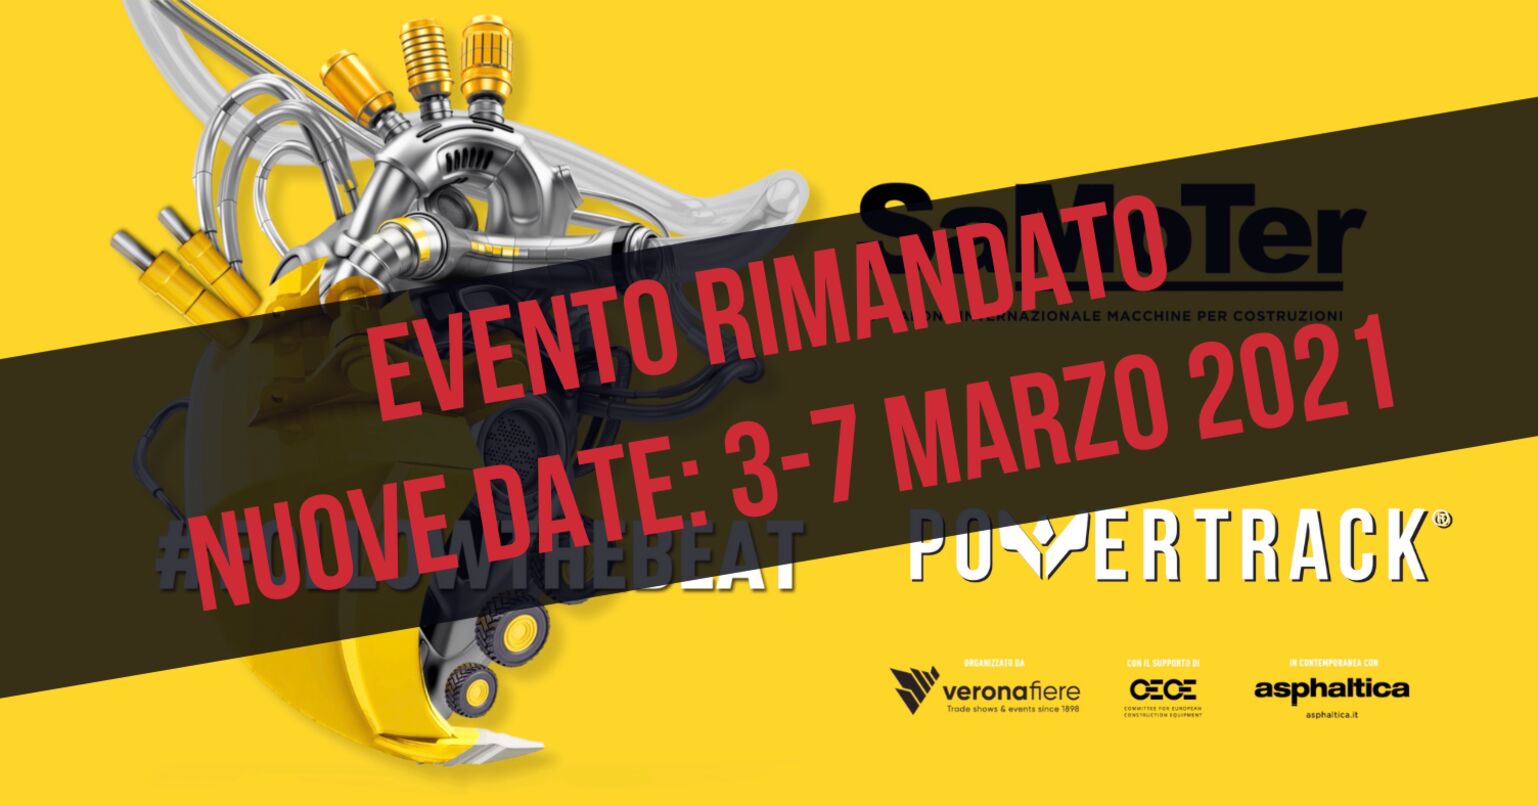 Nuove date per la fiera SaMoTer di Verona: 3-7 marzo 2021